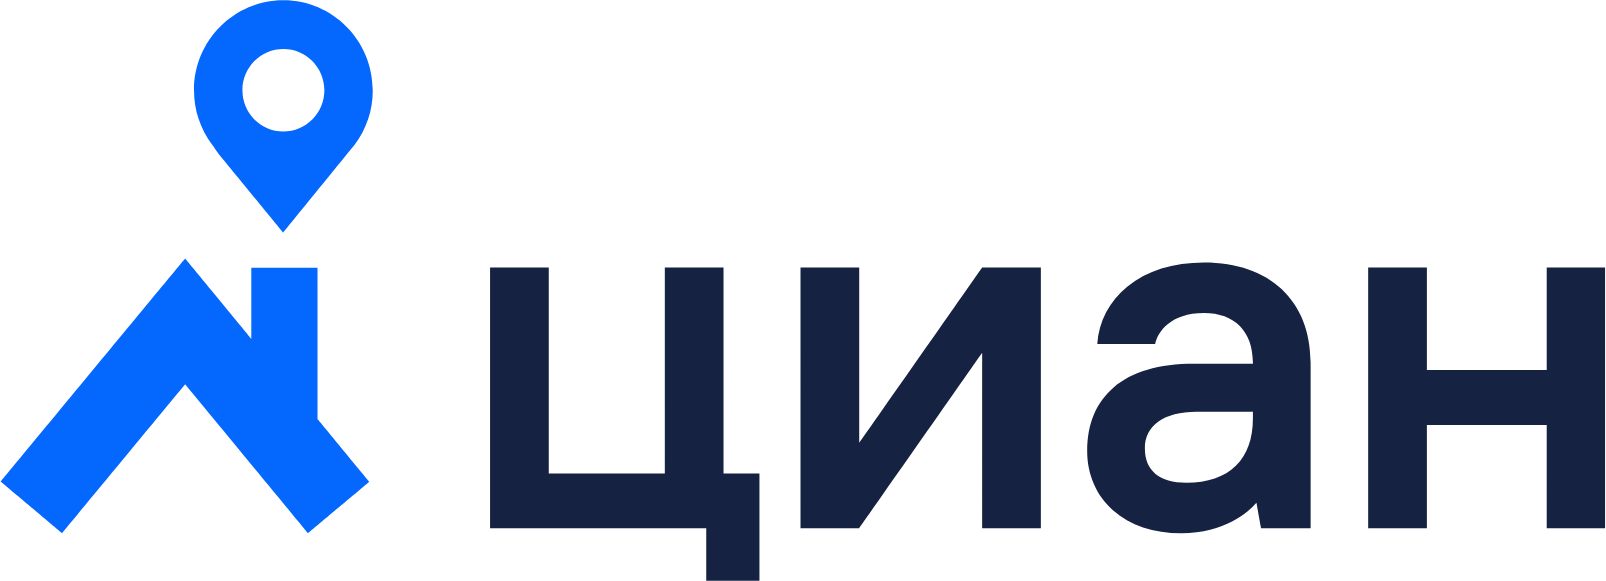 Cian logo large (transparent PNG)